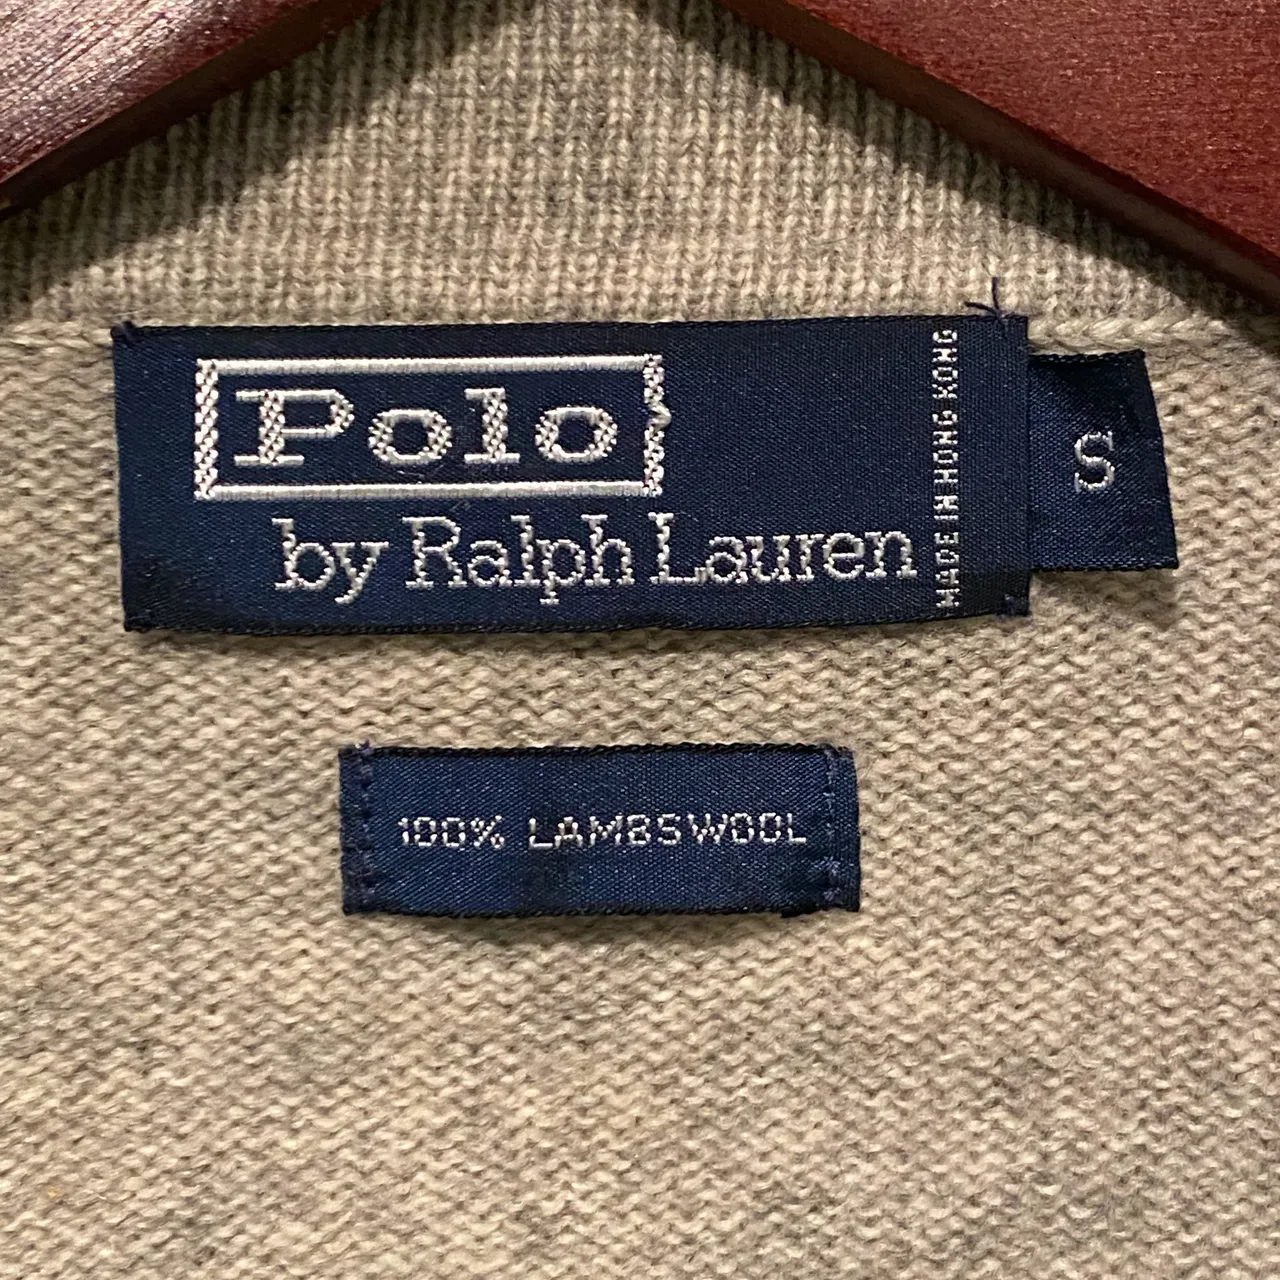 Ralph Lauren sweater knit polo shirt photo 3